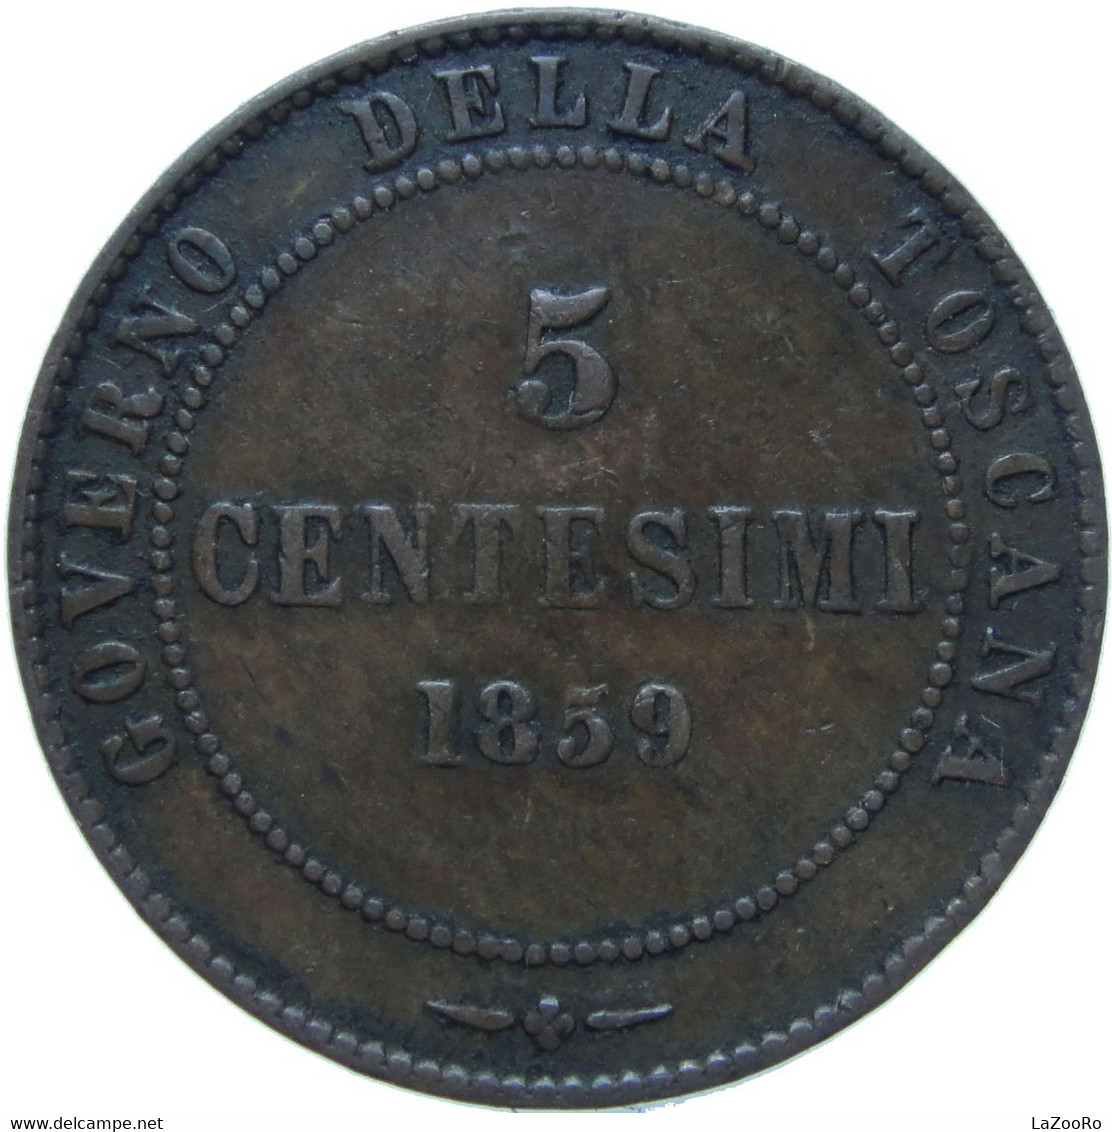 LaZooRo: Italy TUSCANY 5 Centesimi 1859 VF - Tuscan